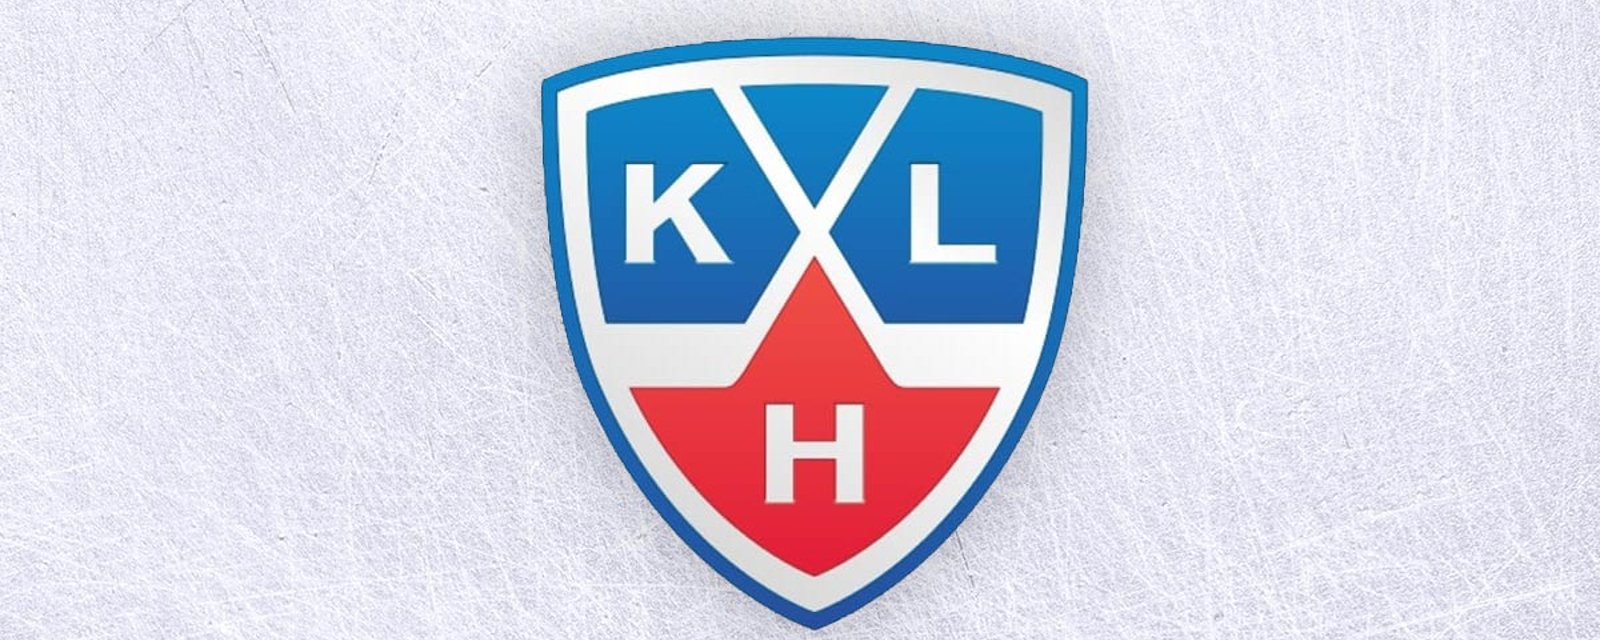 La KHL met fin à sa saison 2021-2022!